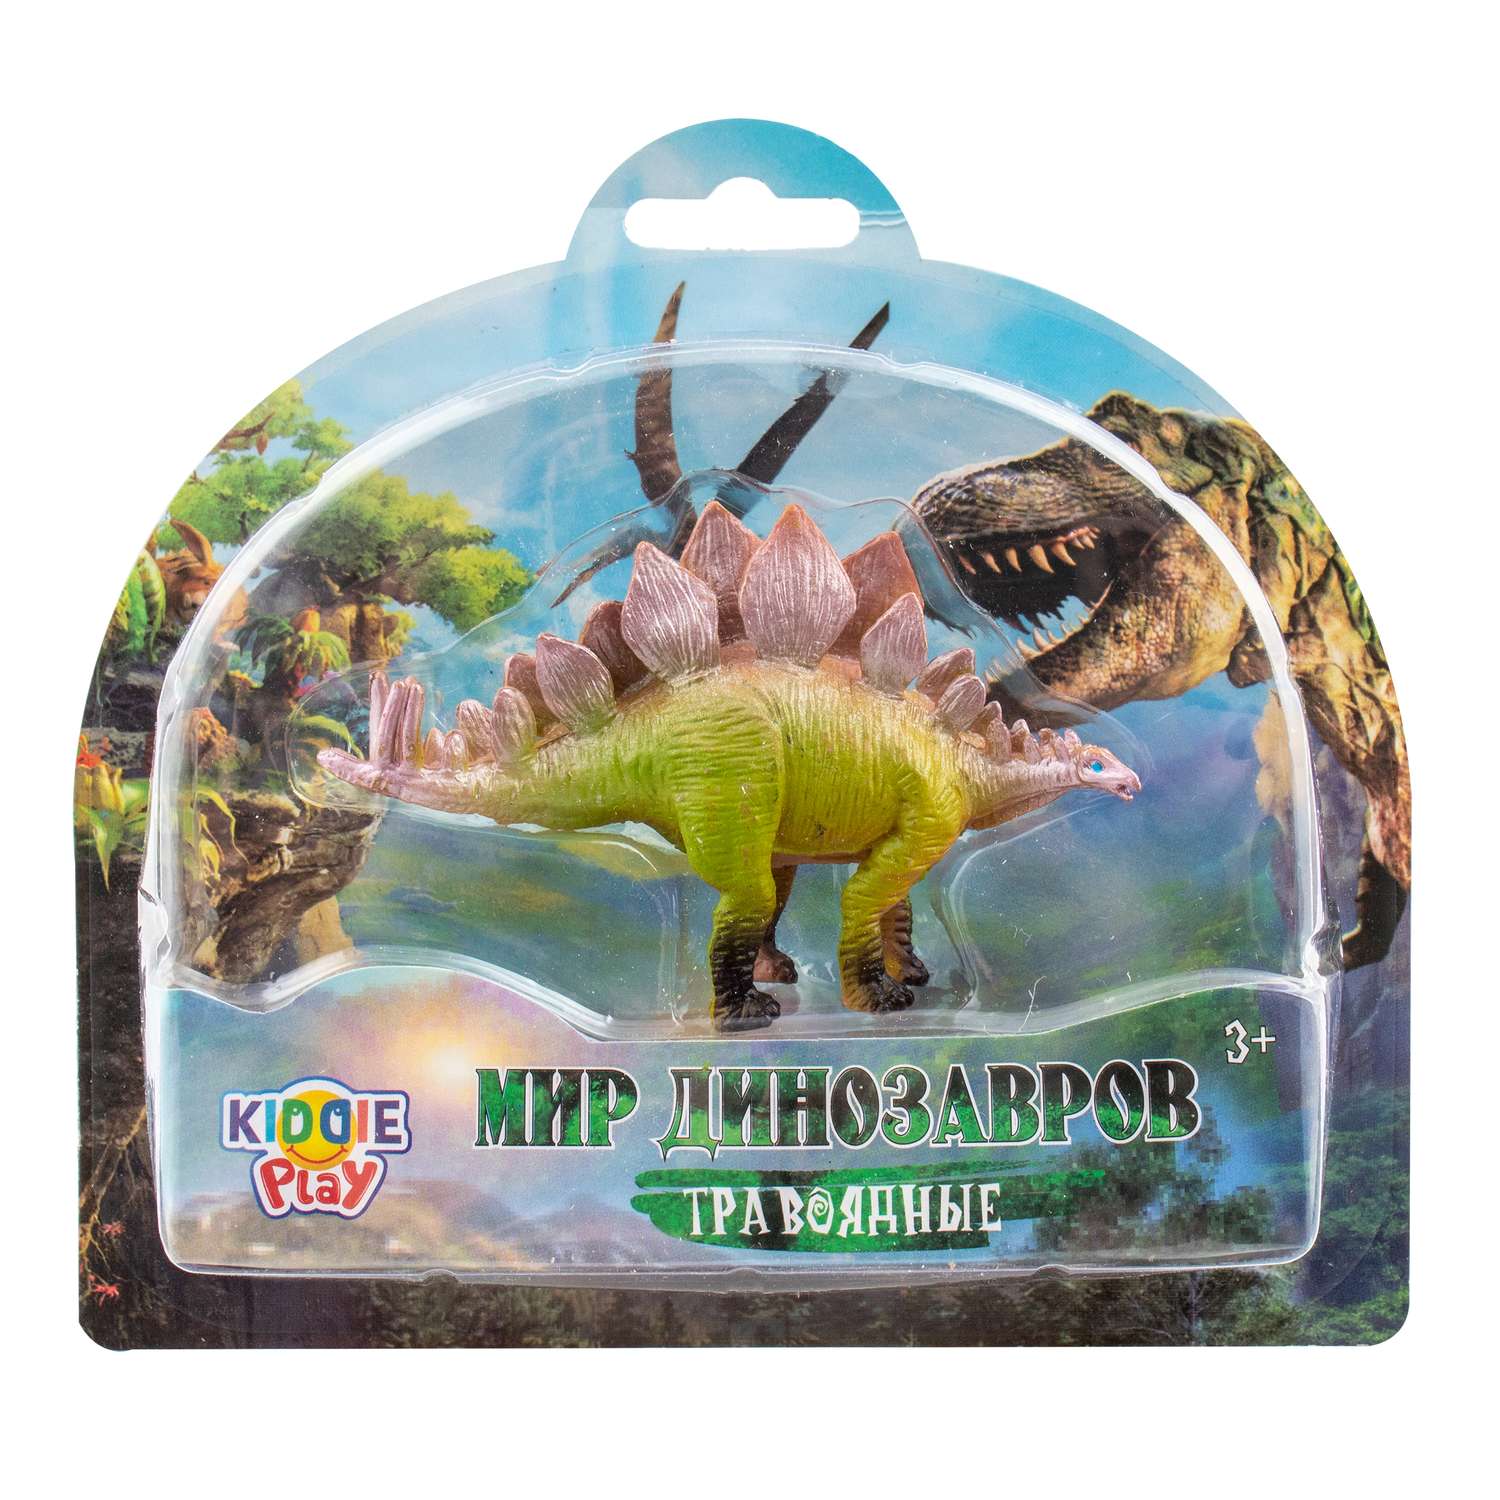 Игрушка KiddiePlay Динозавр травоядный в ассортименте 12602 - фото 4